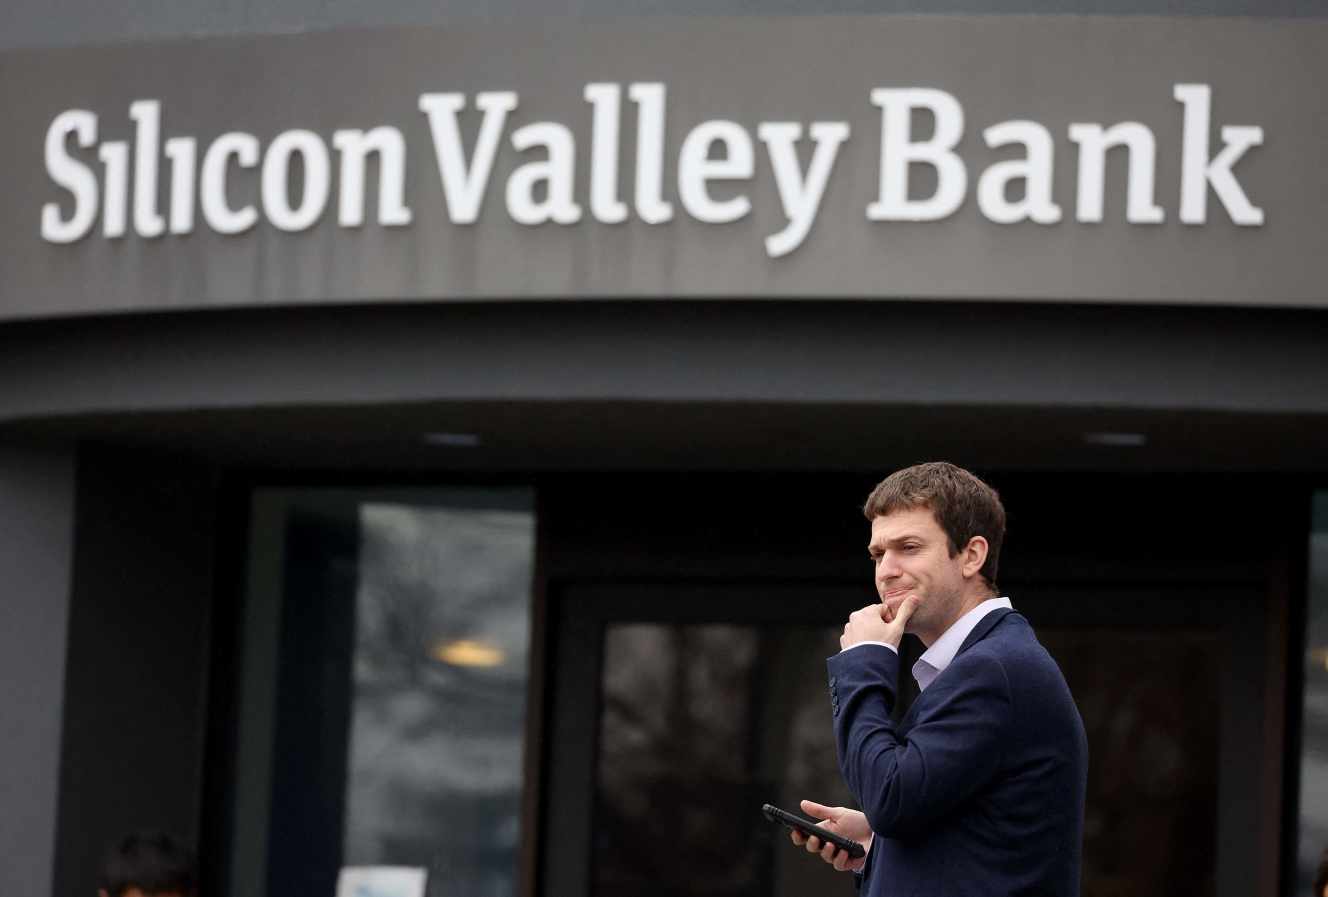 La fermeture de la Silicon Valley Bank, plus grosse faillite bancaire depuis la crise de 2008